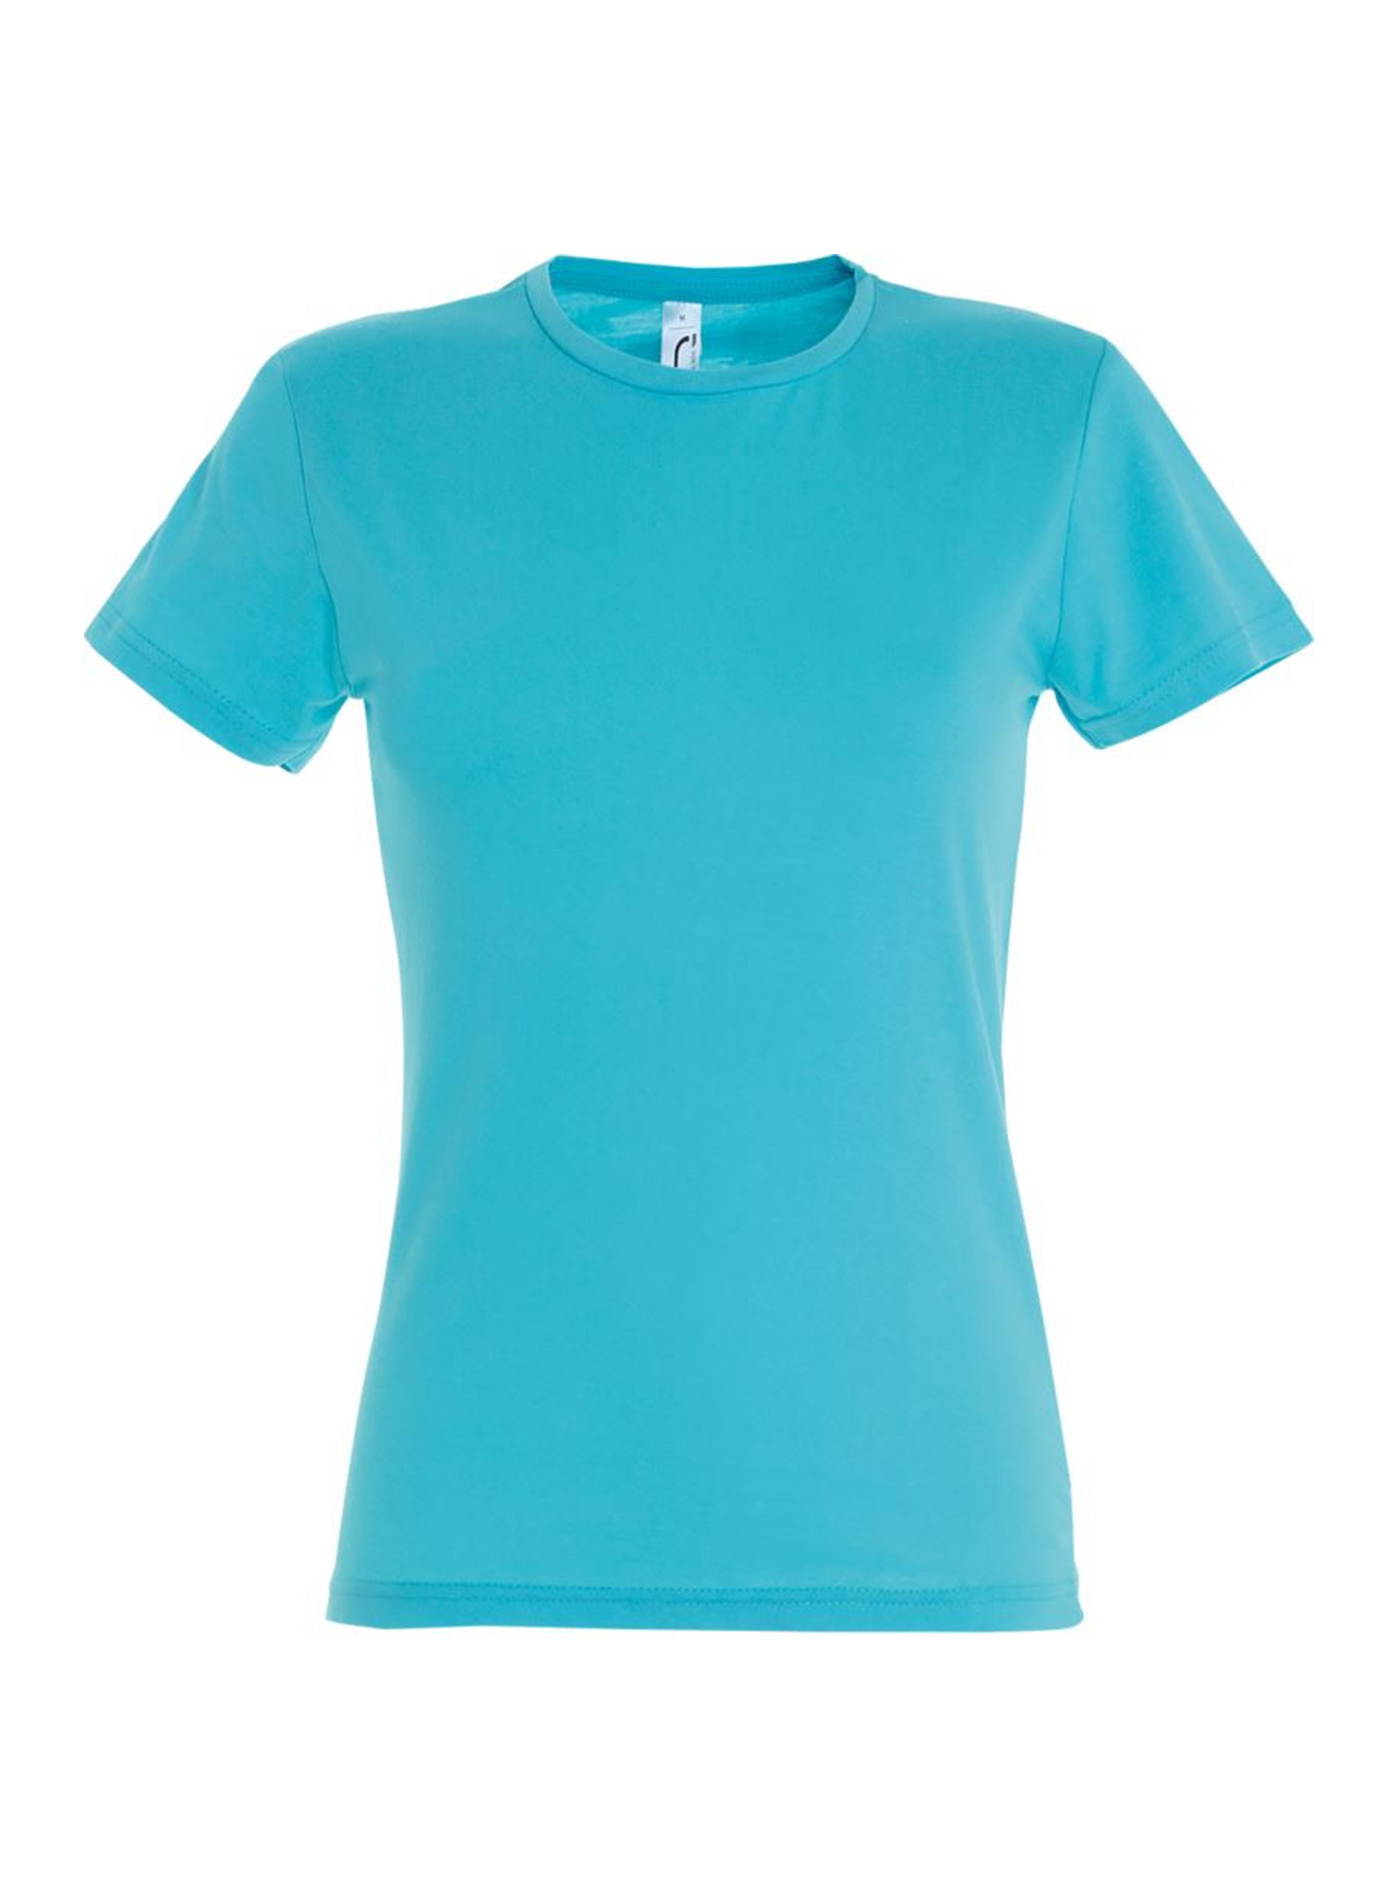 Dámské tričko SOL'S Miss - Azurově modrá žíhaná XXL